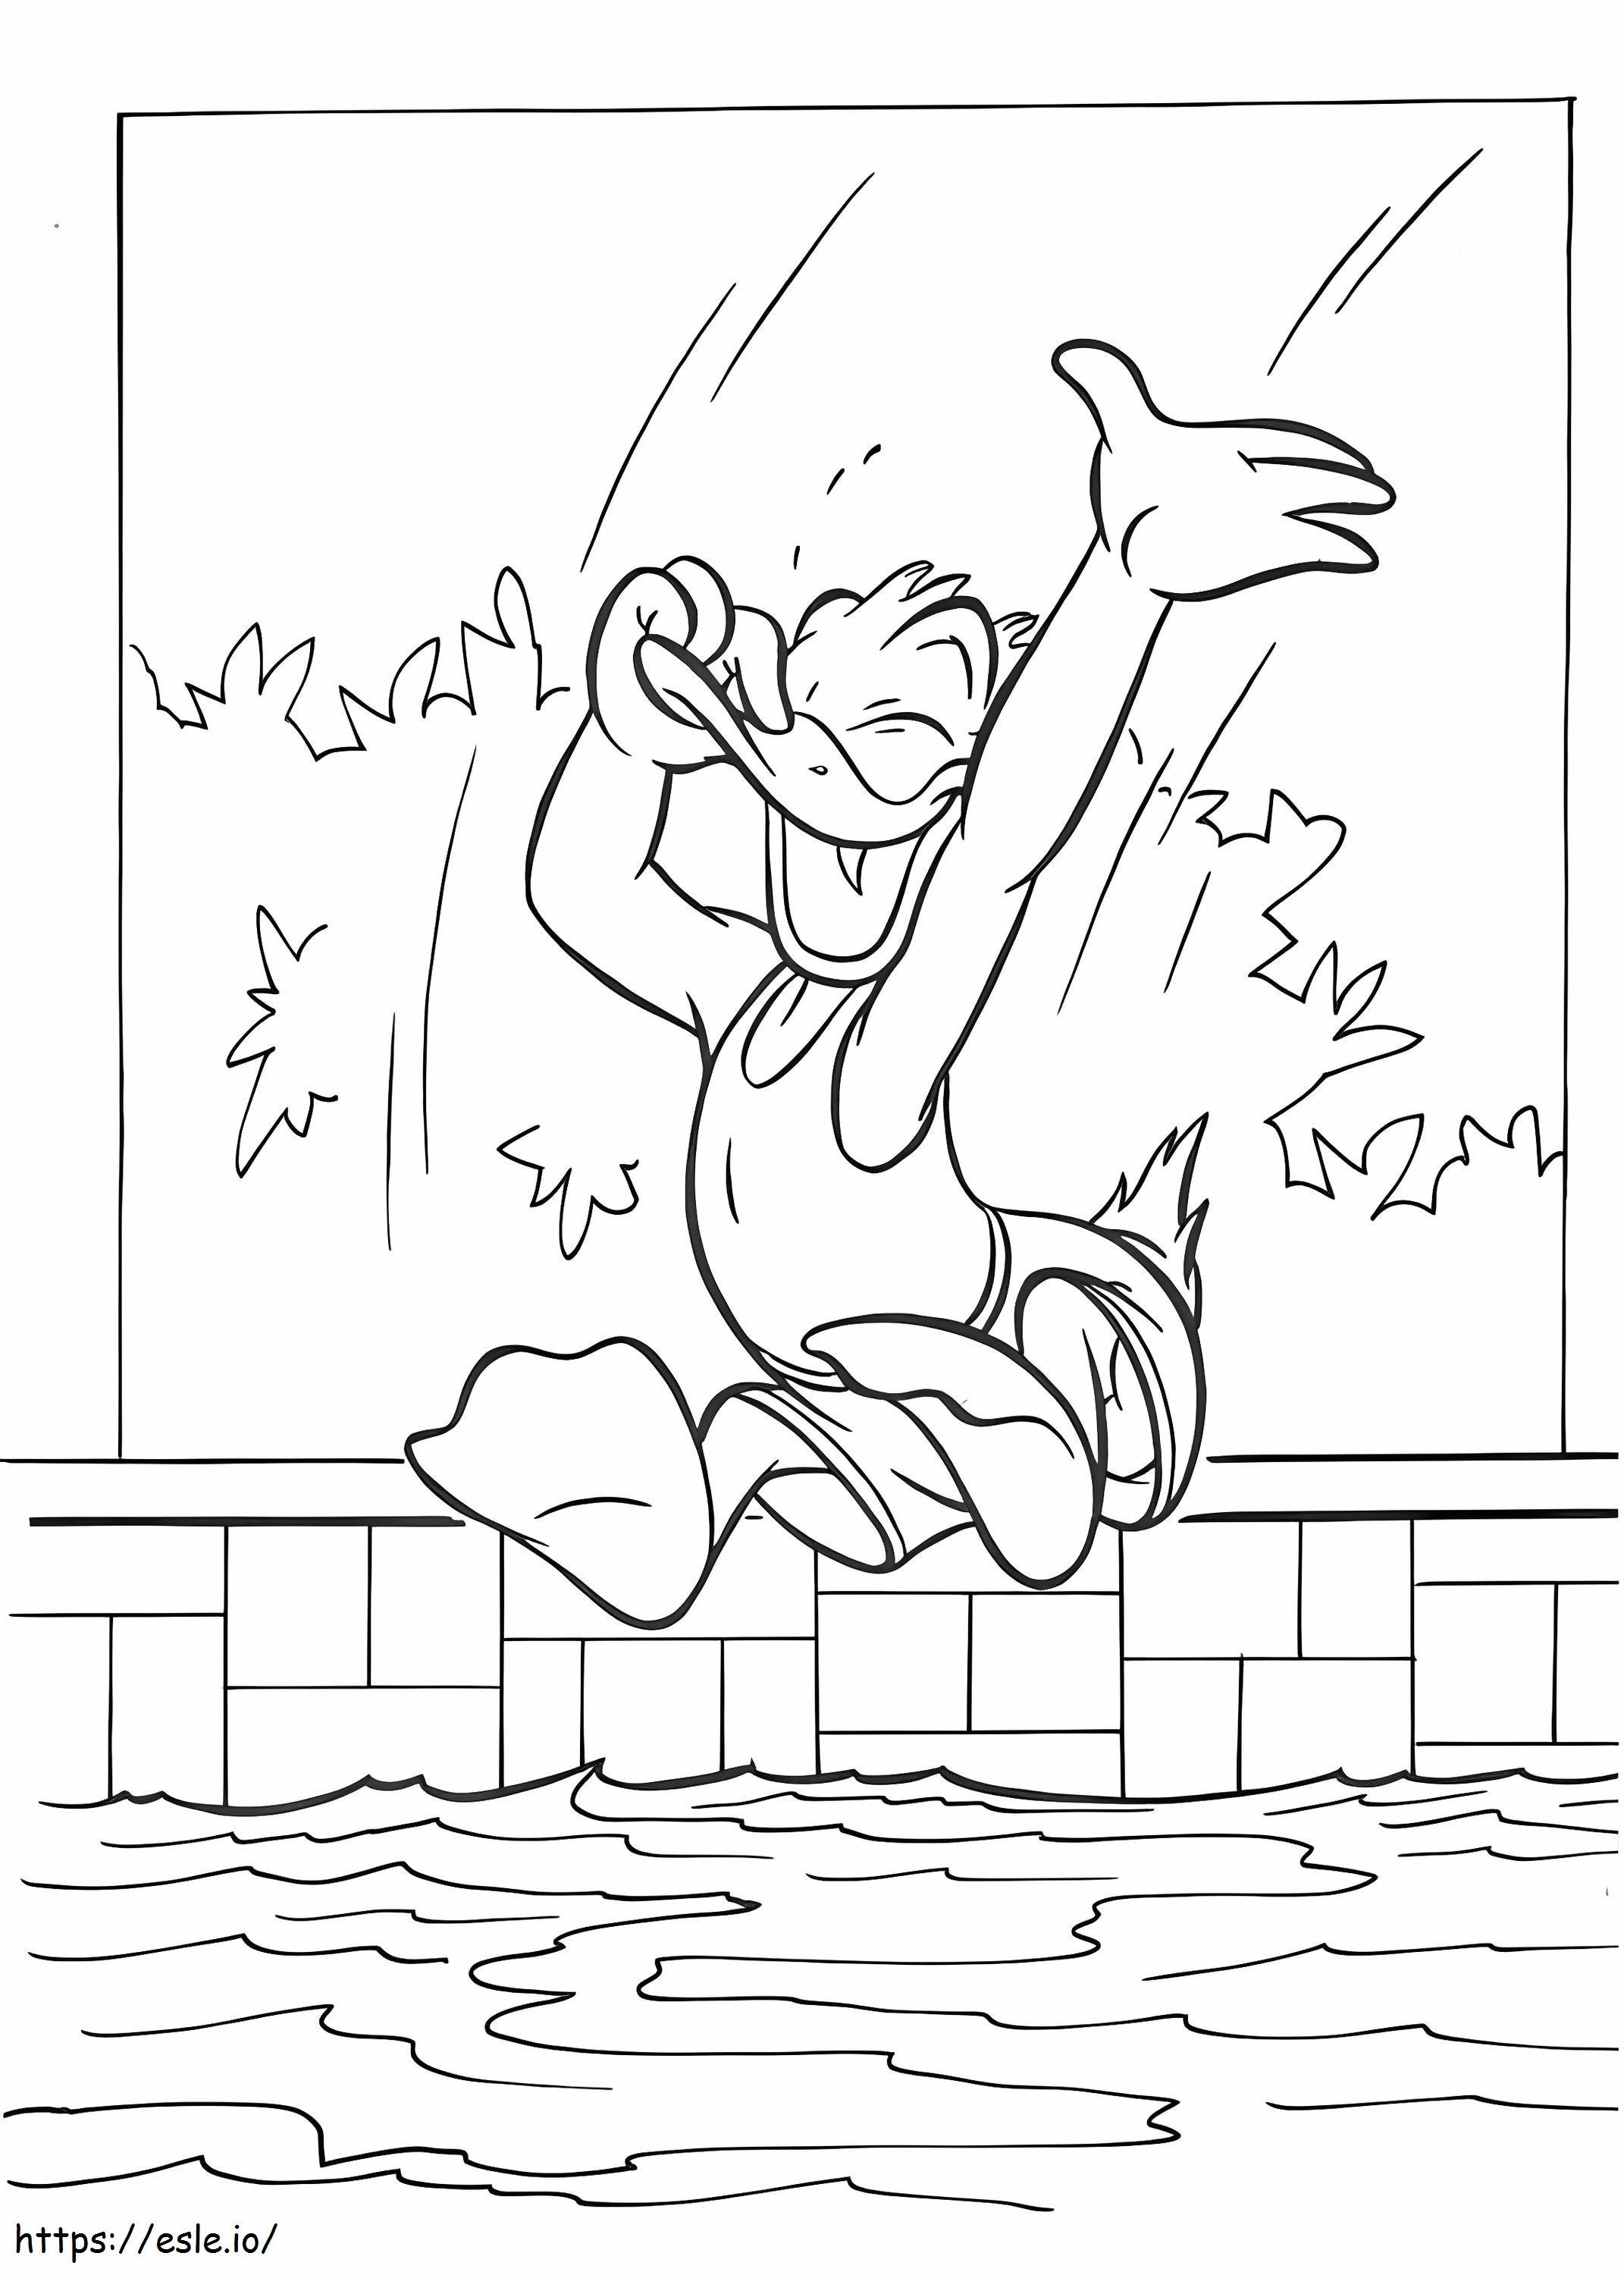 1534757024 Donald pulando em uma piscina A4 para colorir